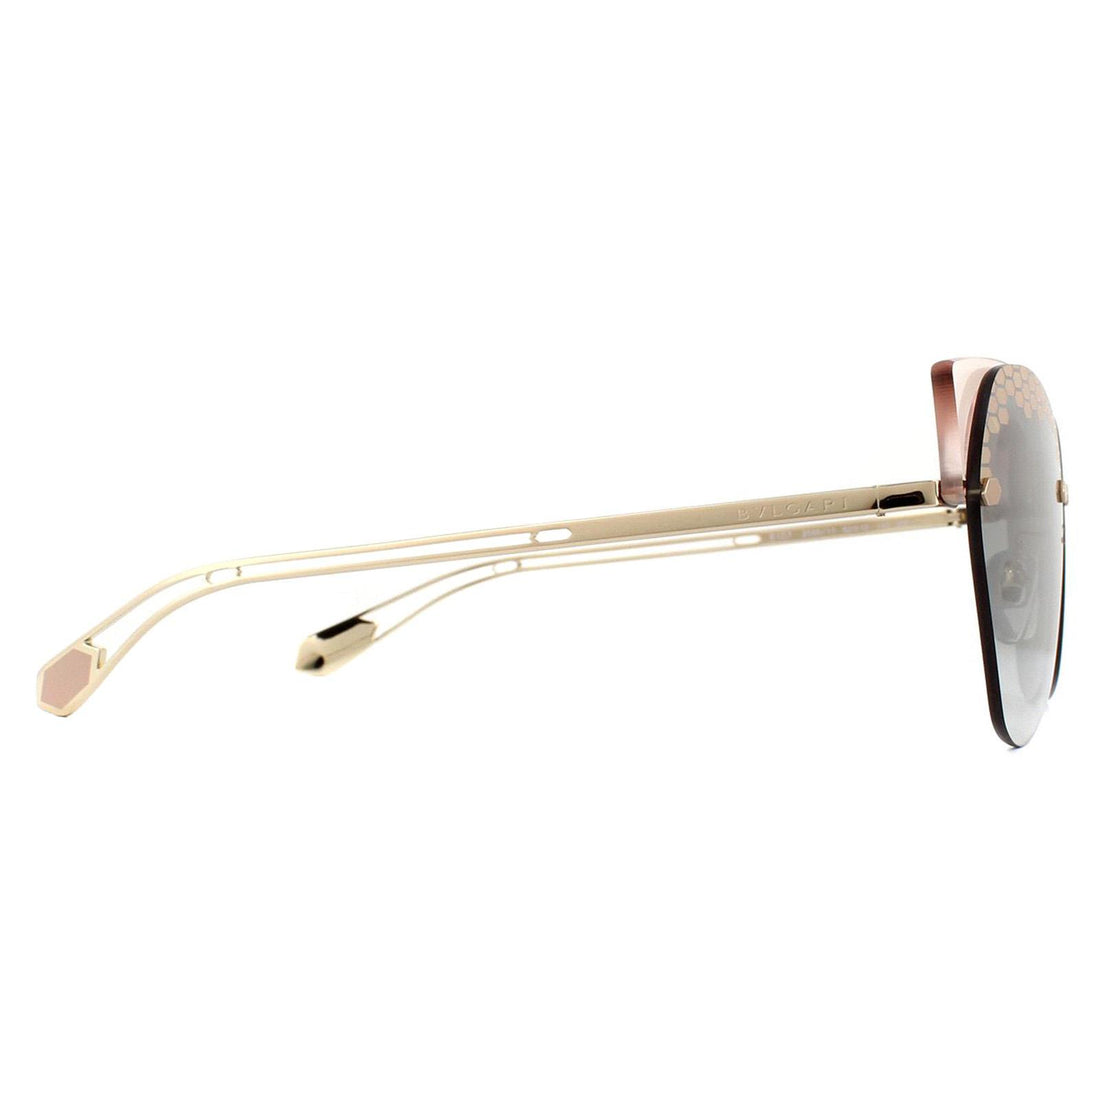 Bvlgari Sunglasses BV6107 205011 Pink Transparent Grey Gradient